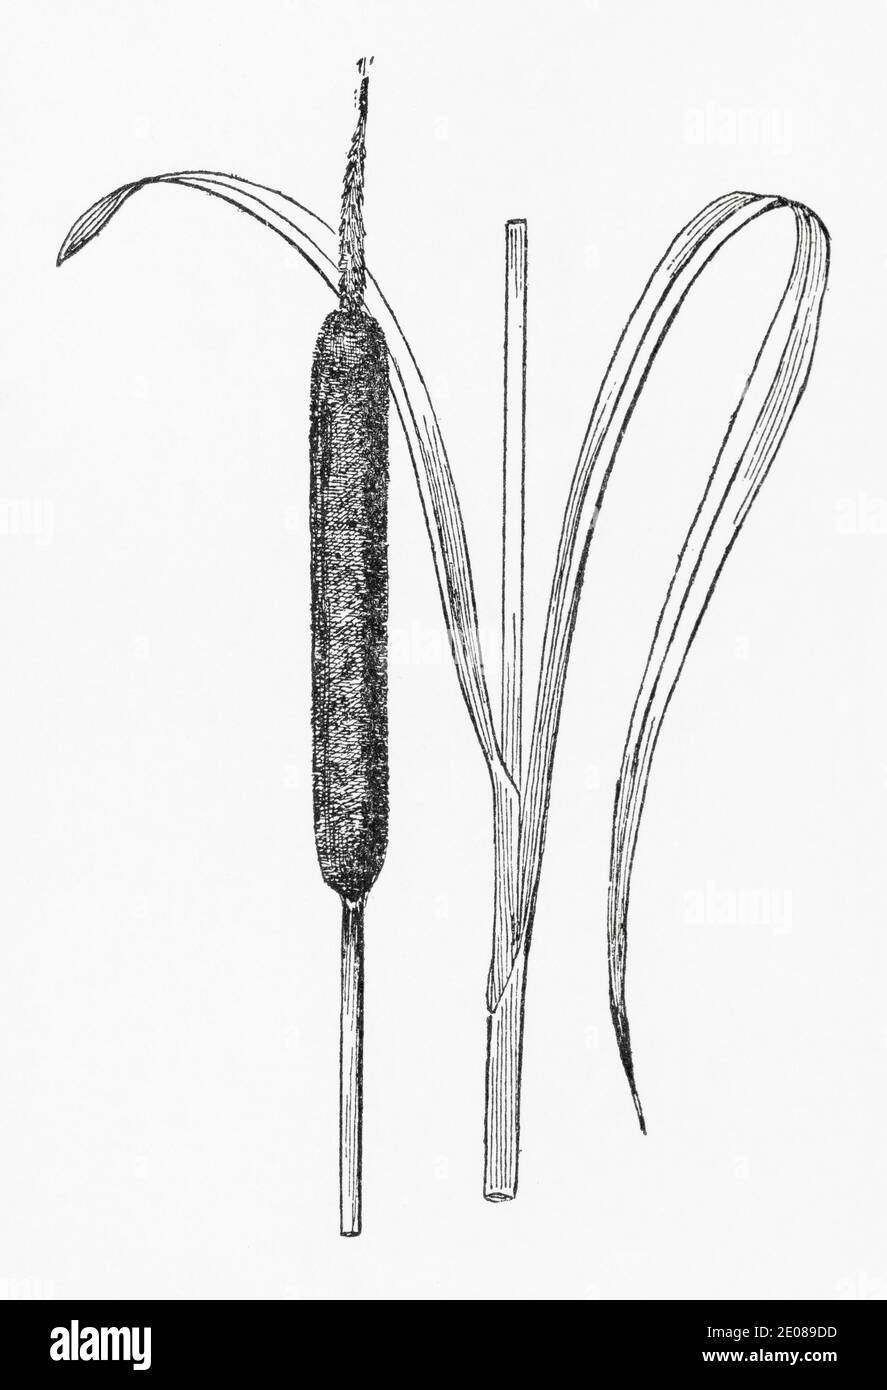 Antica illustrazione botanica incisione di grande Reed-mace / Typha latifolia. Pianta di erbe medicinali tradizionali. Vedere Note Foto Stock